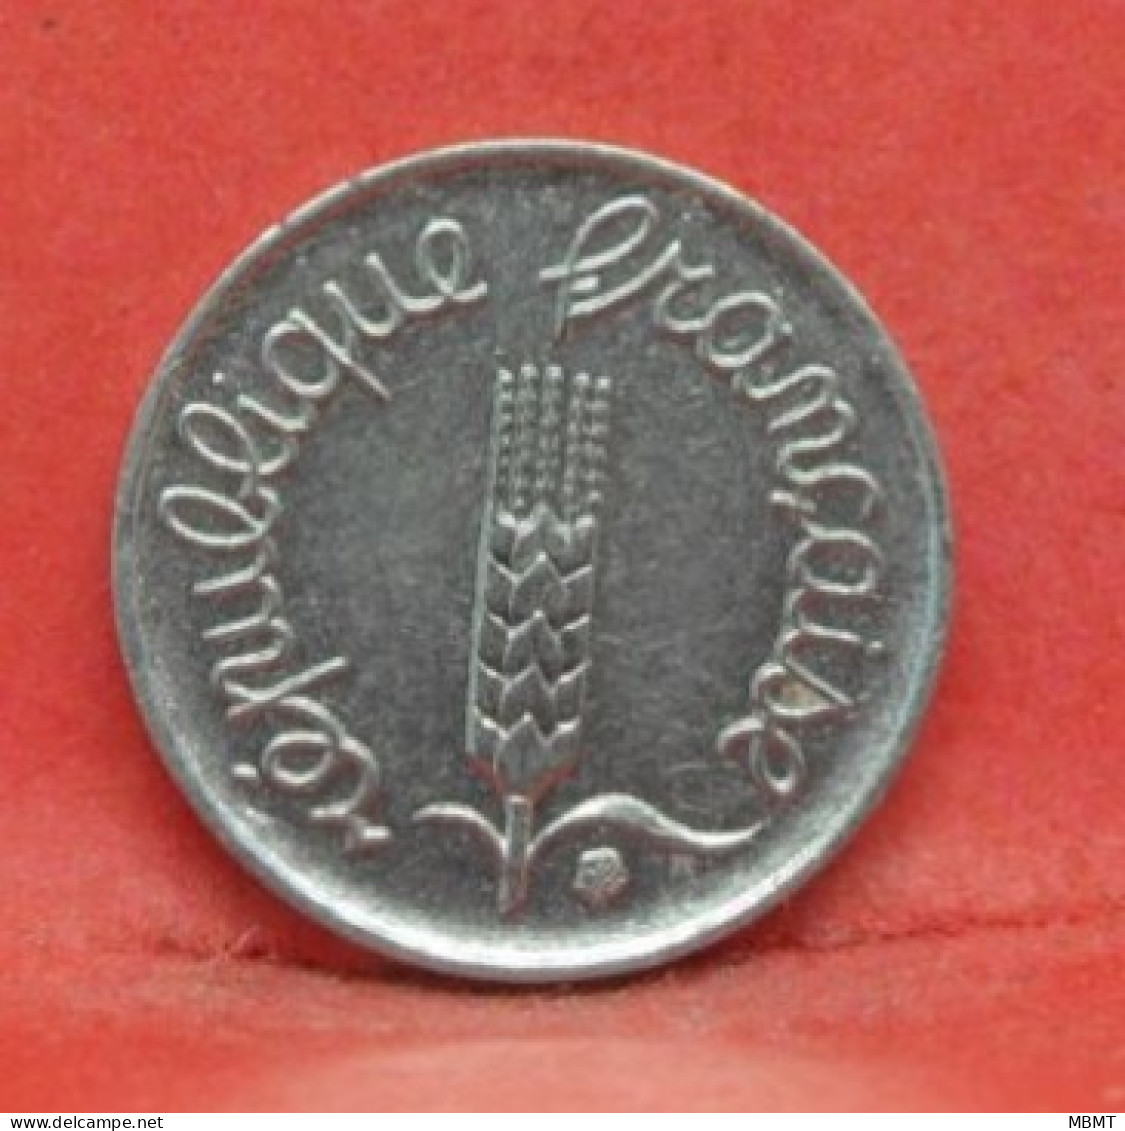 1 Centime épi 1966 - TTB - Monnaie France - Article N°11 - 1 Centime